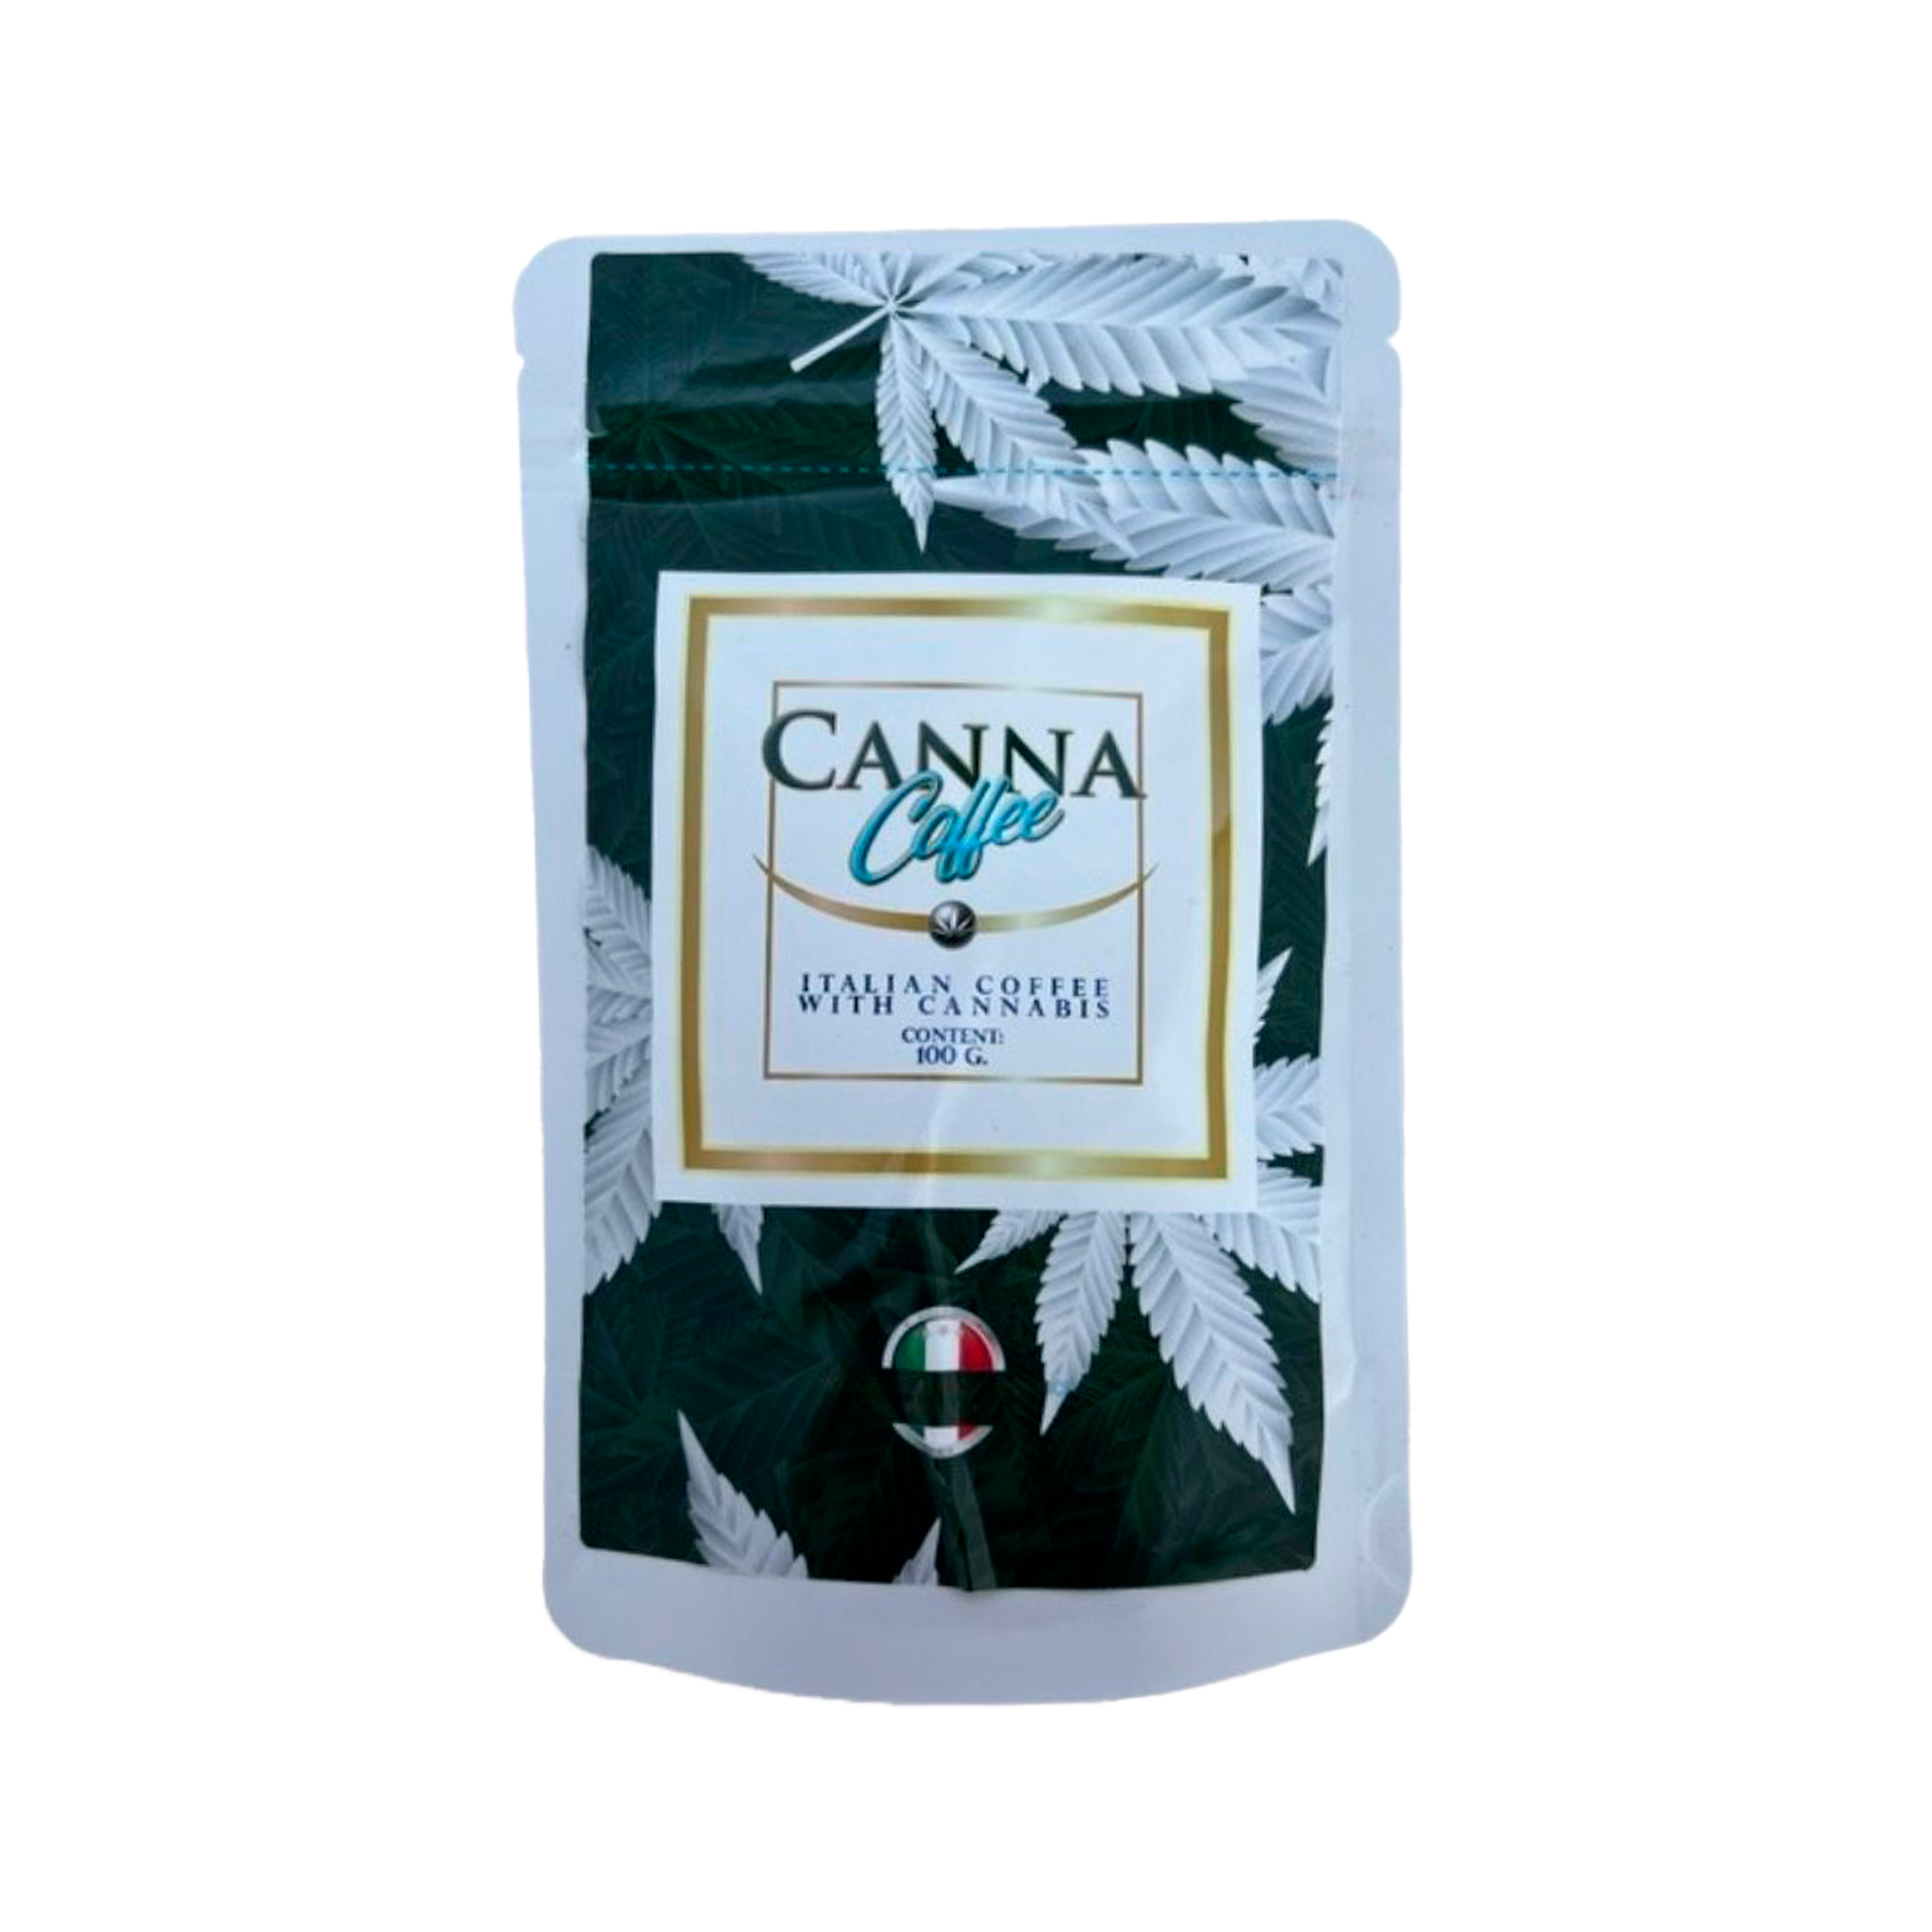 Canna Coffee